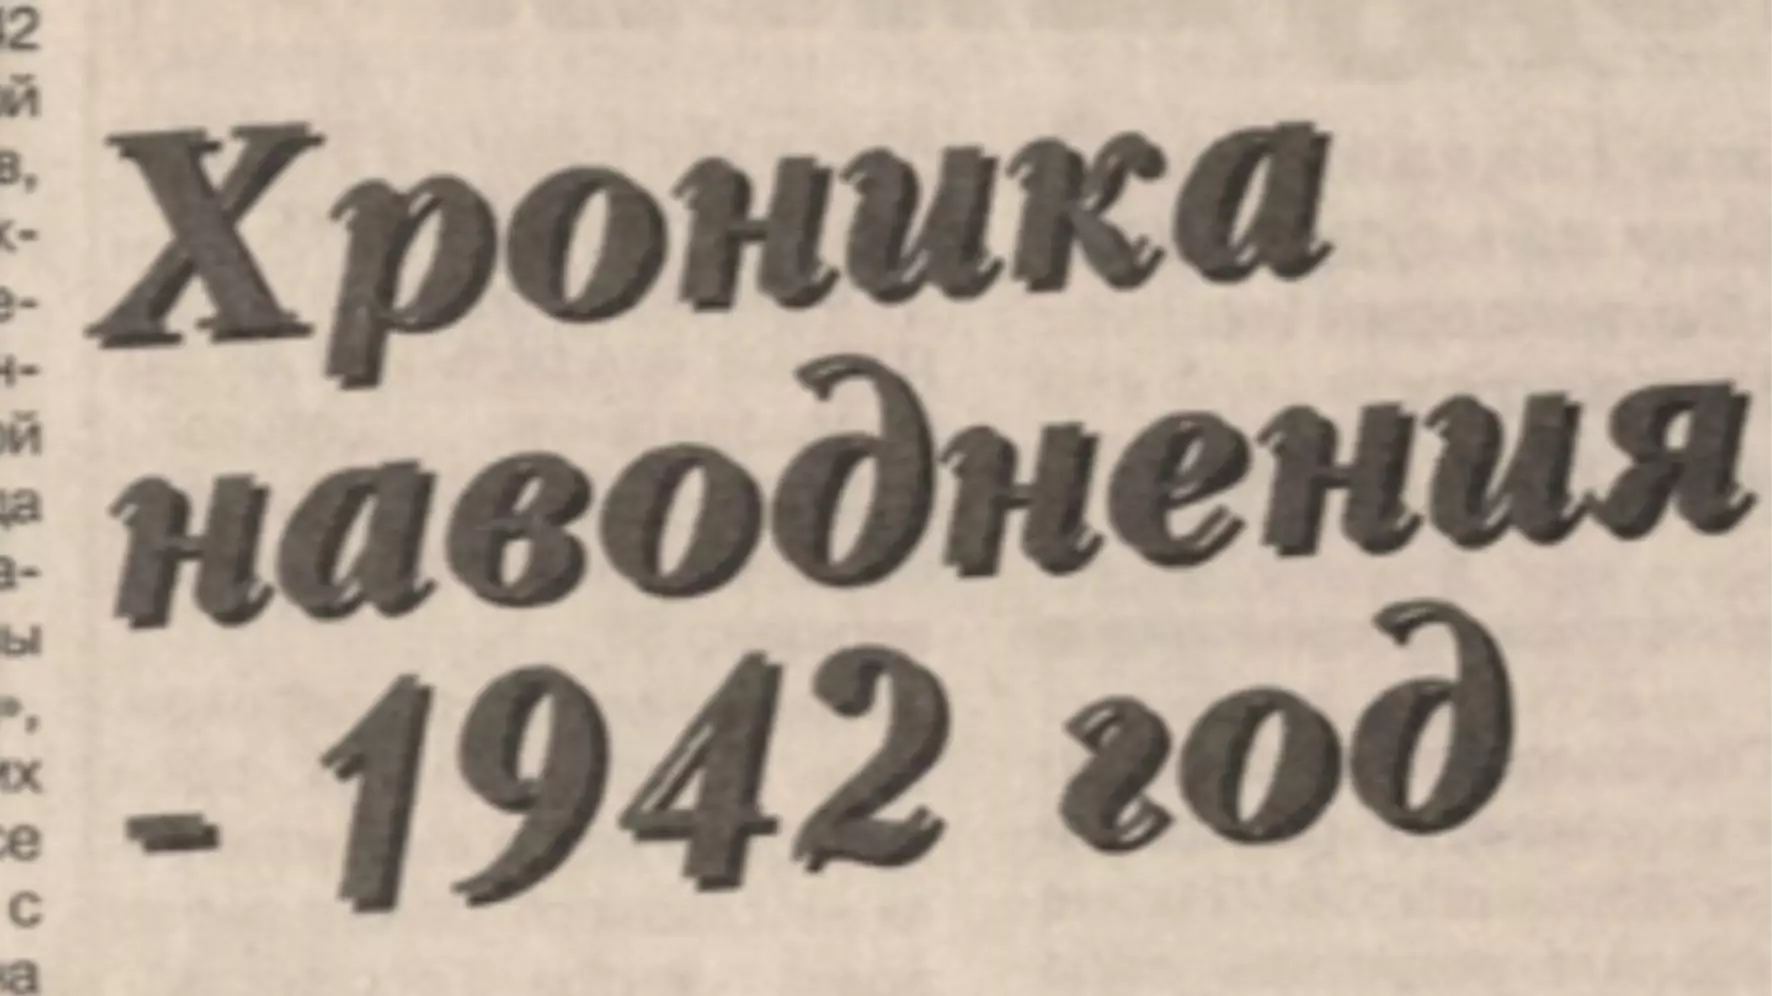 Заголовок статьи почетного архивиста РФ Татьяны Судоргиной в газете «Оренбуржье» за 28 марта 1991 года,